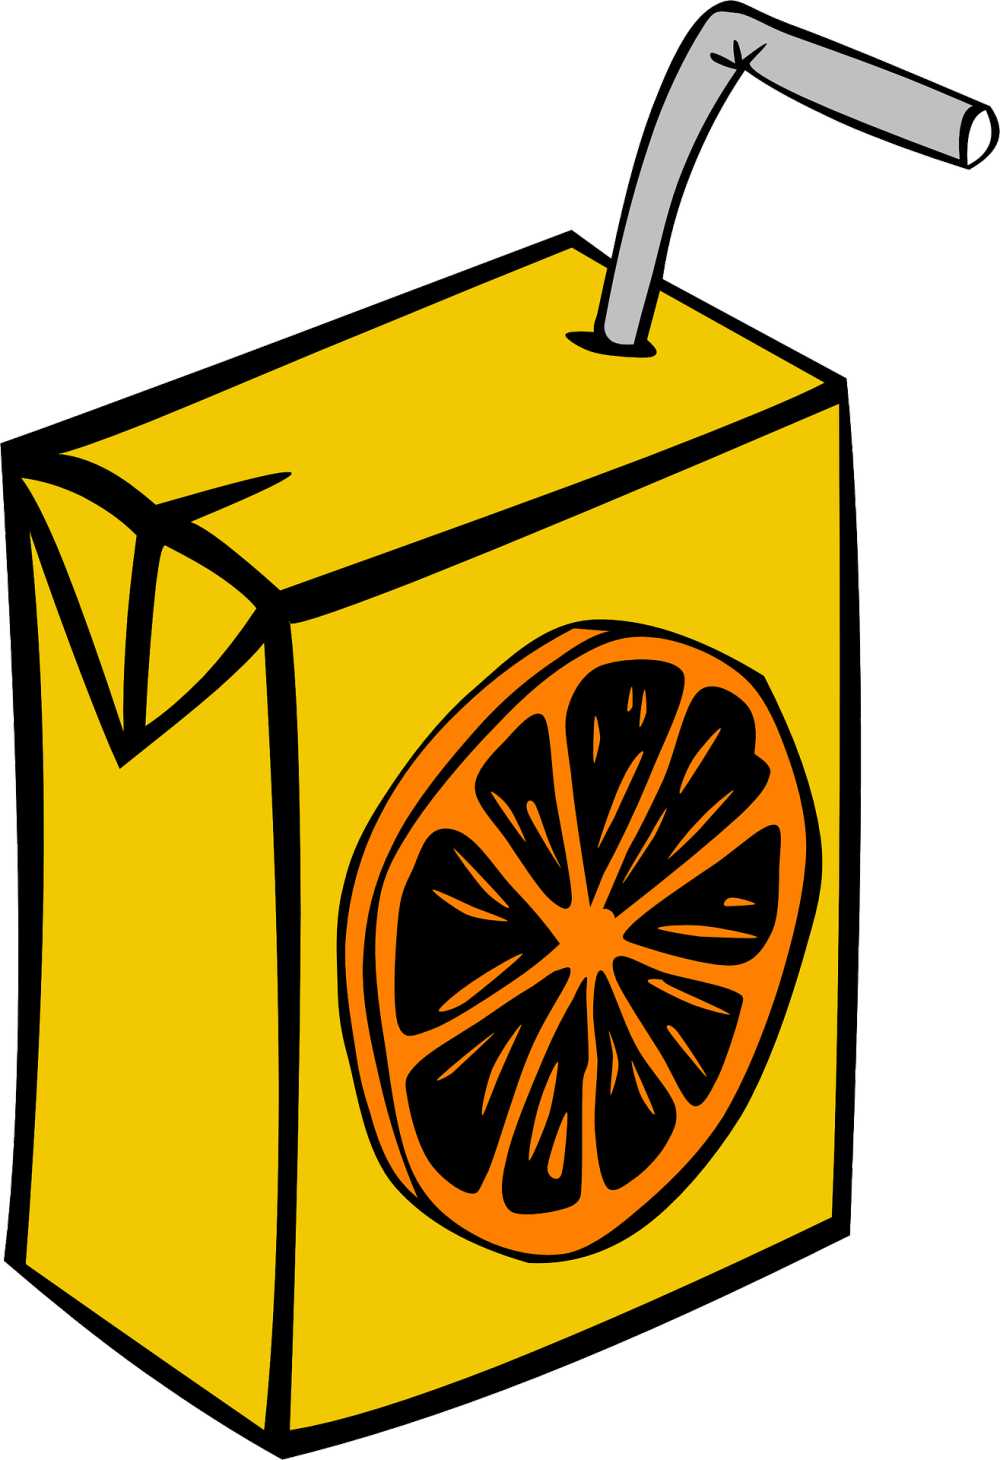 果汁盒纸箱一次性使用稻草橙色饮料喝午餐学校麻袋